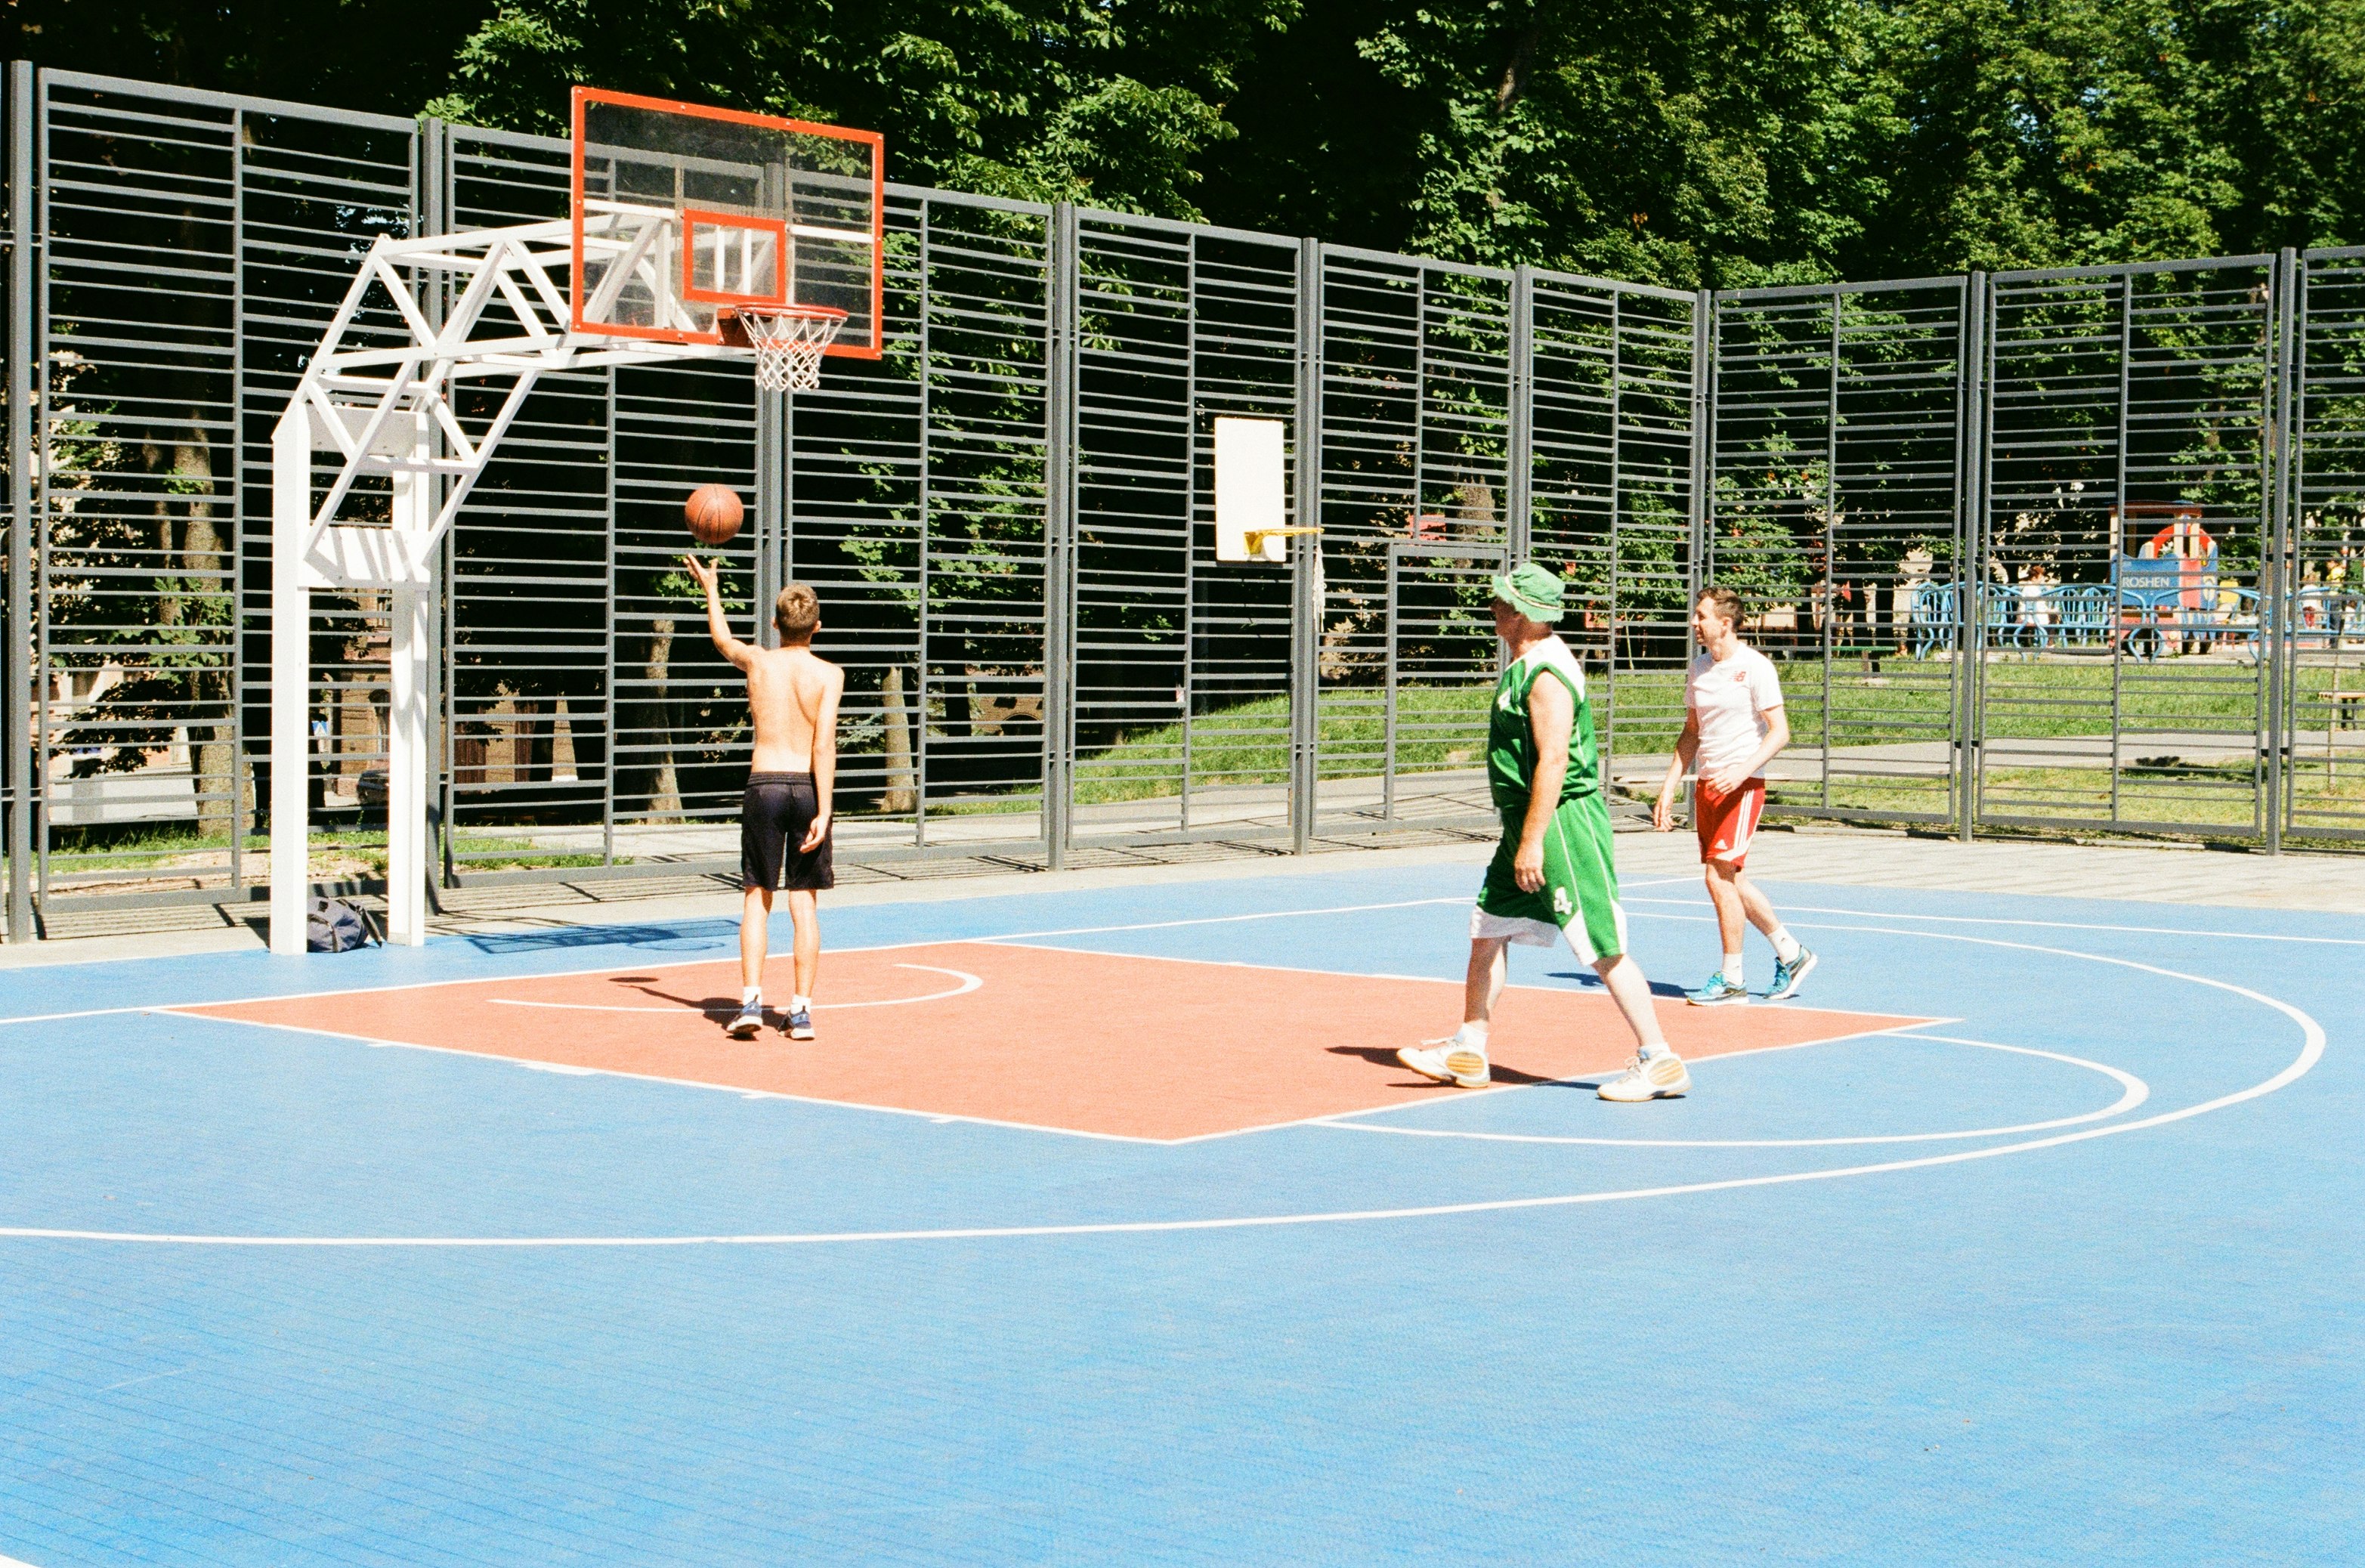 2 men playing basketball during daytime